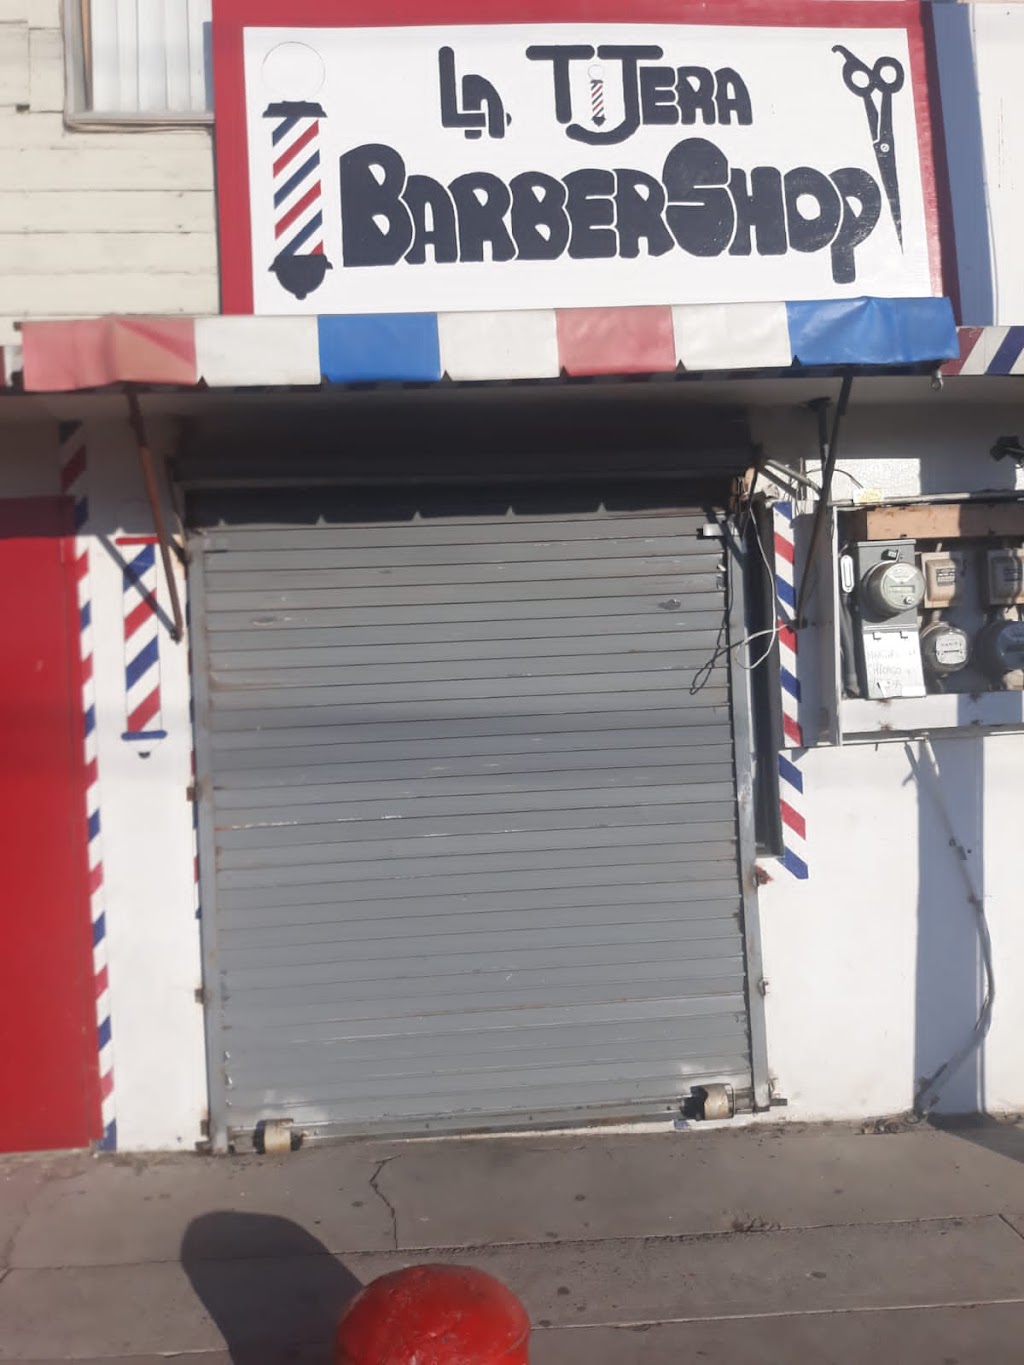 La Tijera BarberShop | Av. Martires de Chicago 715A, Obrera 1a. Secc., 22625 Tijuana, B.C., Mexico | Phone: 664 876 1734